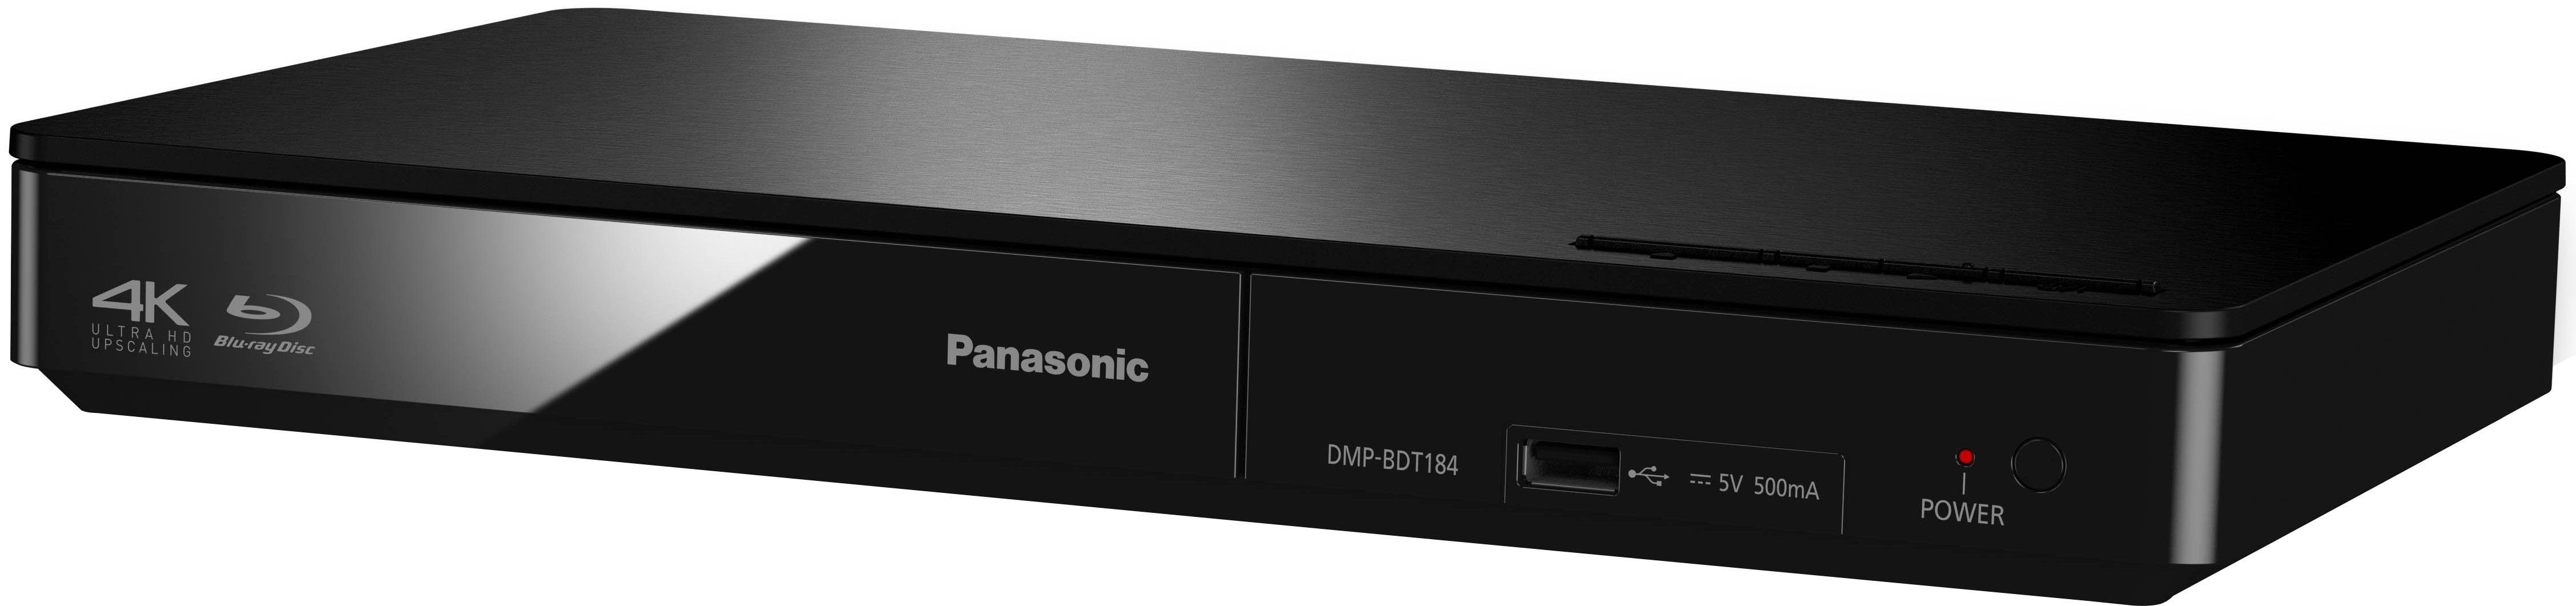 / schwarz Blu-ray-Player (Ethernet), (LAN Schnellstart-Modus) 4K DMP-BDT184 Upscaling, Panasonic DMP-BDT185